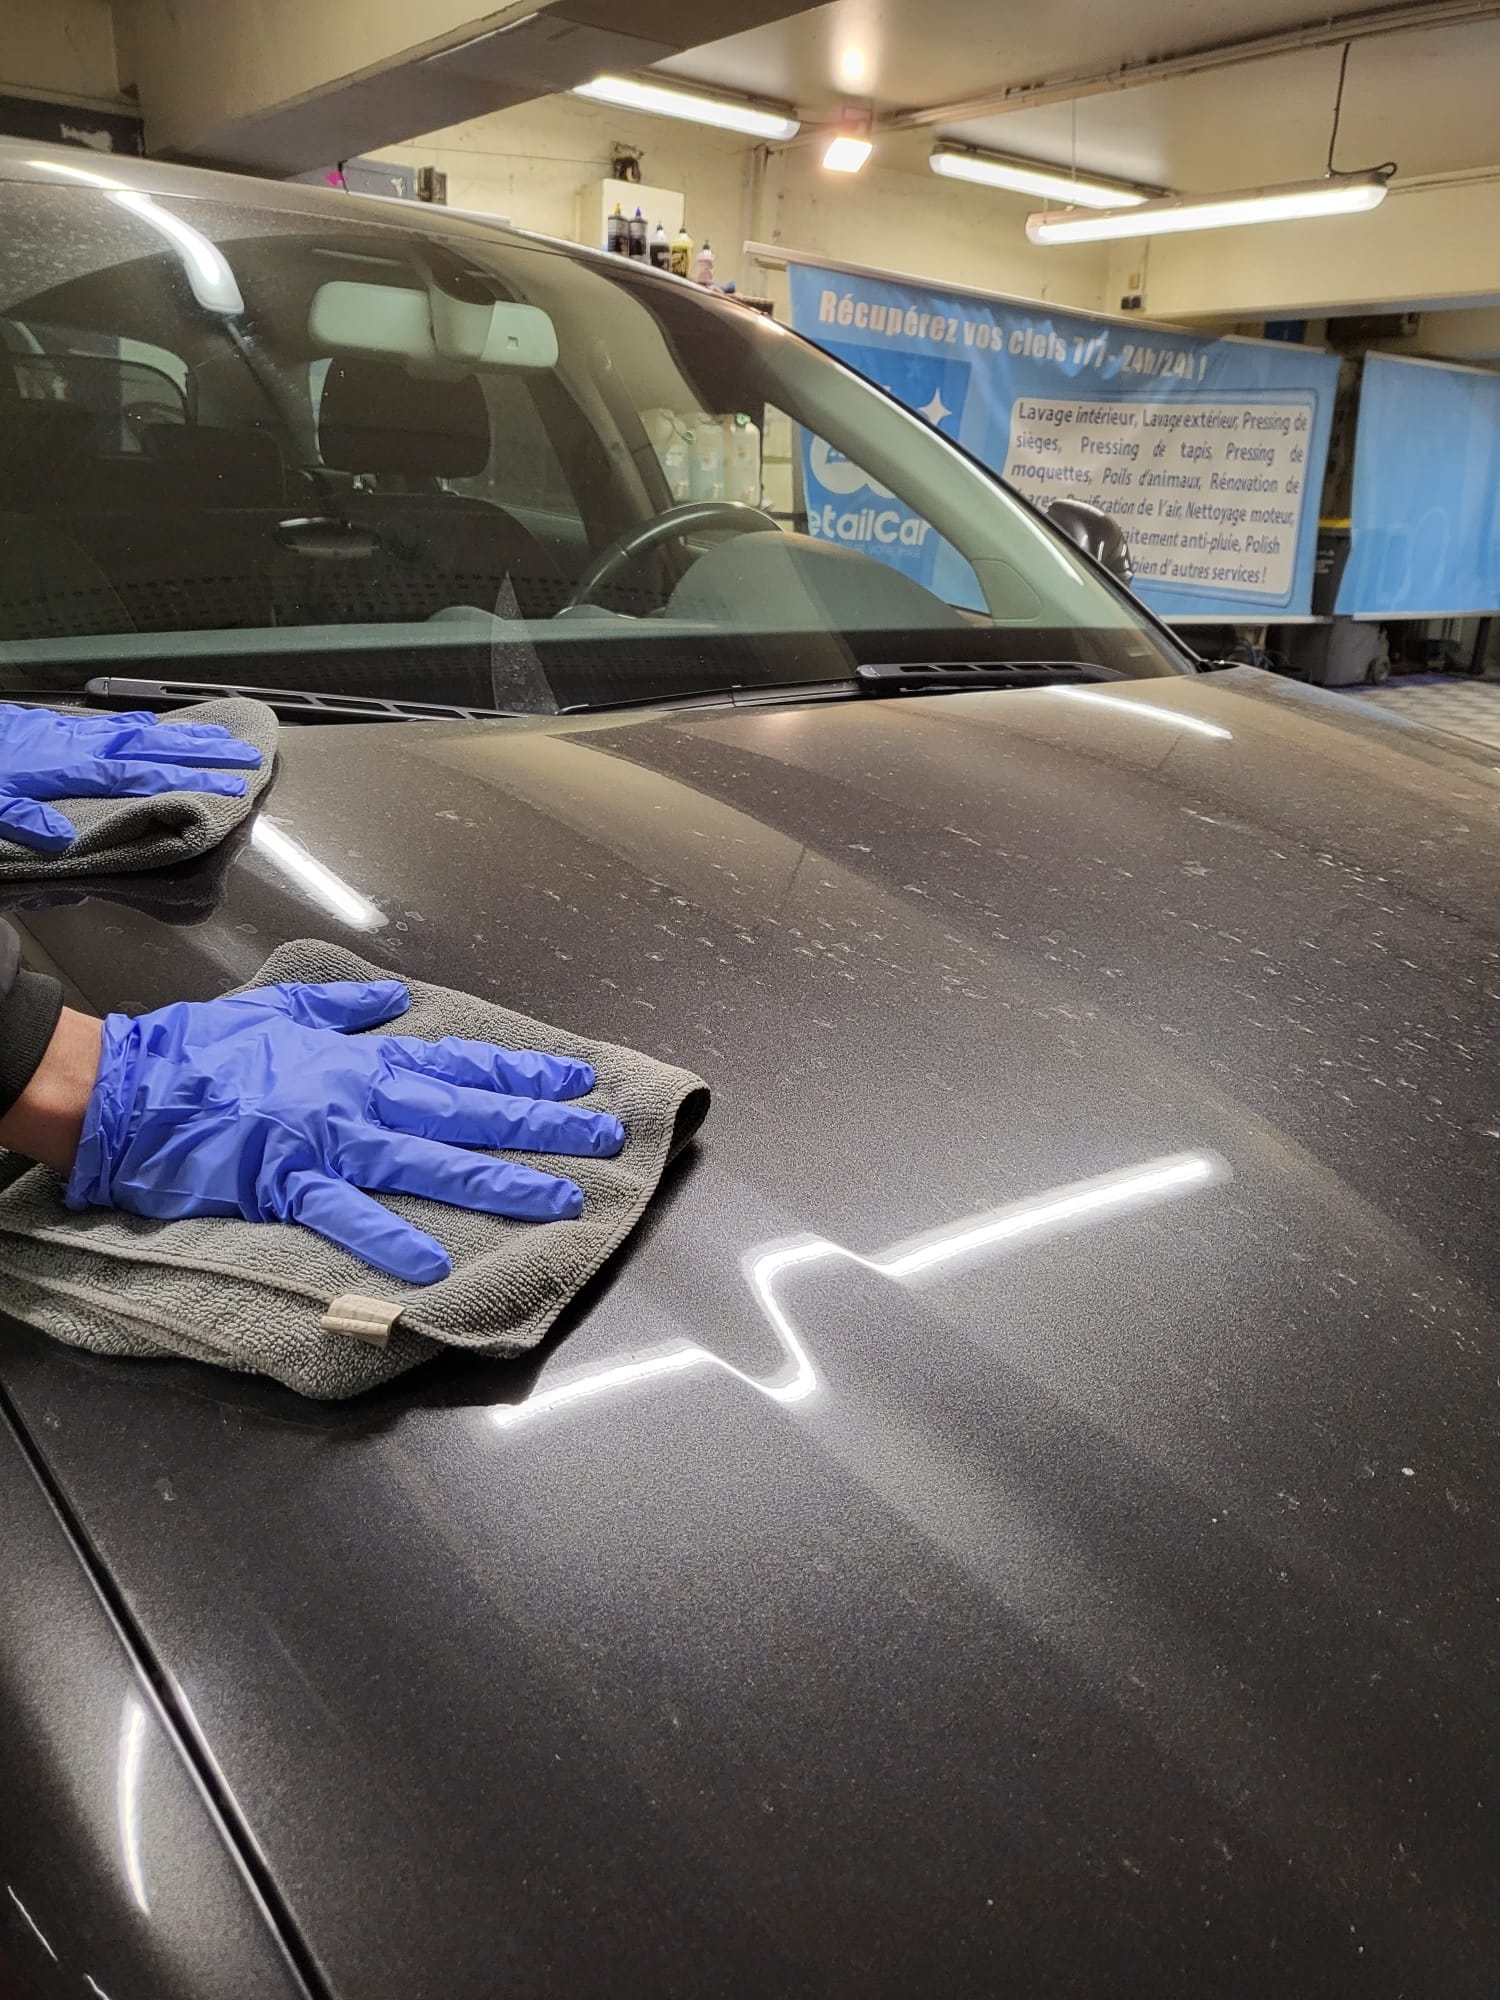 Lavage intérieur de voiture à domicile Paris – Nettoyage auto lustrage